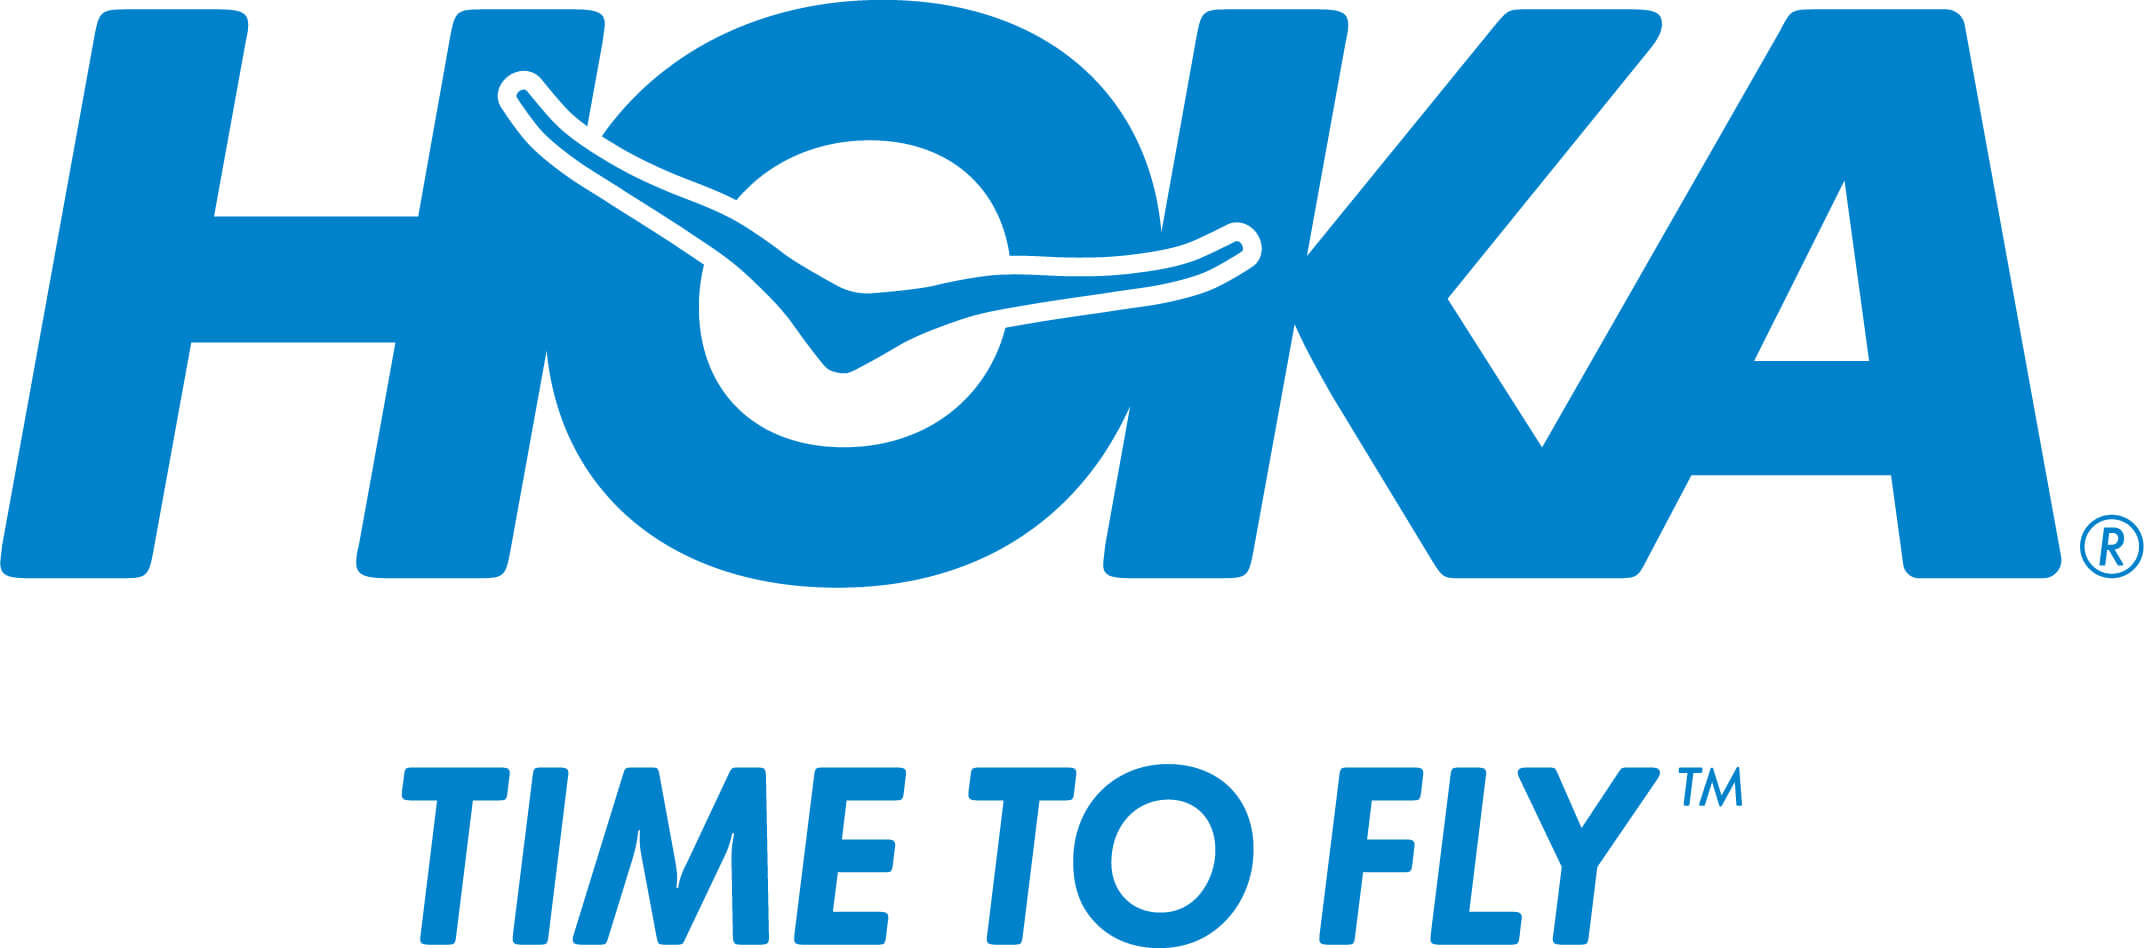 Hoka One One UK - Hoka - Winter Sale - up to 30% off